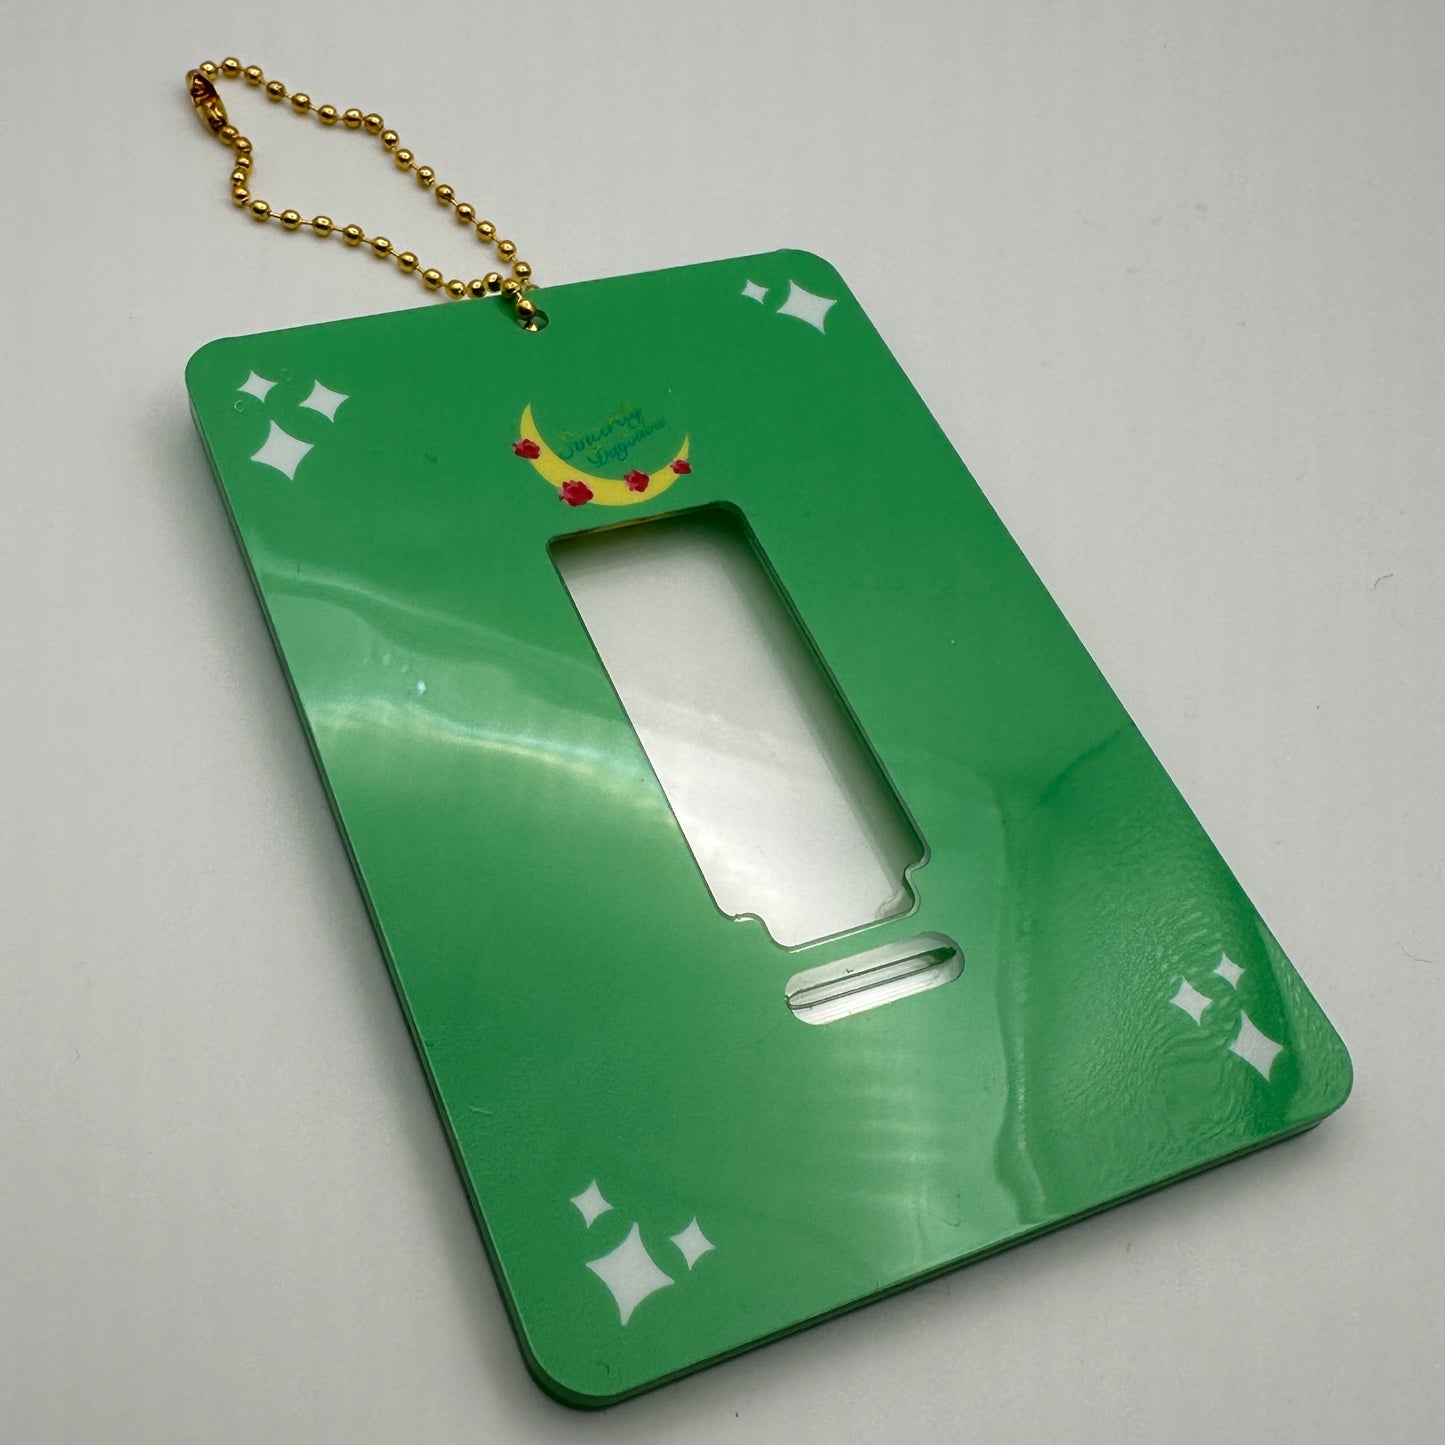 Photocard keychain/Stands X Sincerely Daijoubu